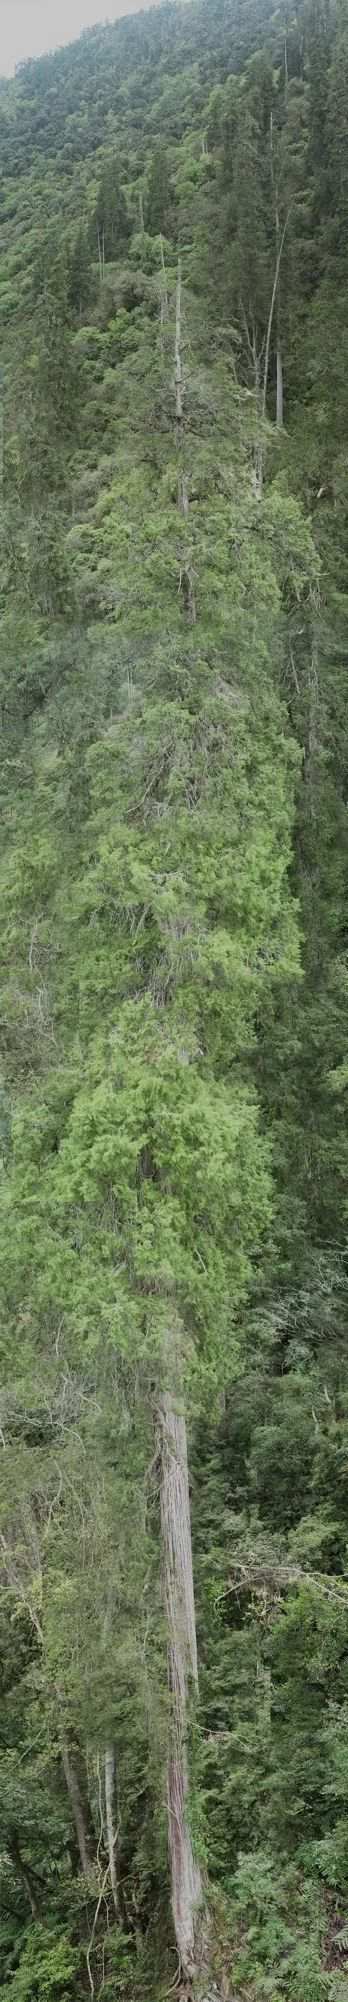 Hallan árbol más alto de Asia en el Tíbet